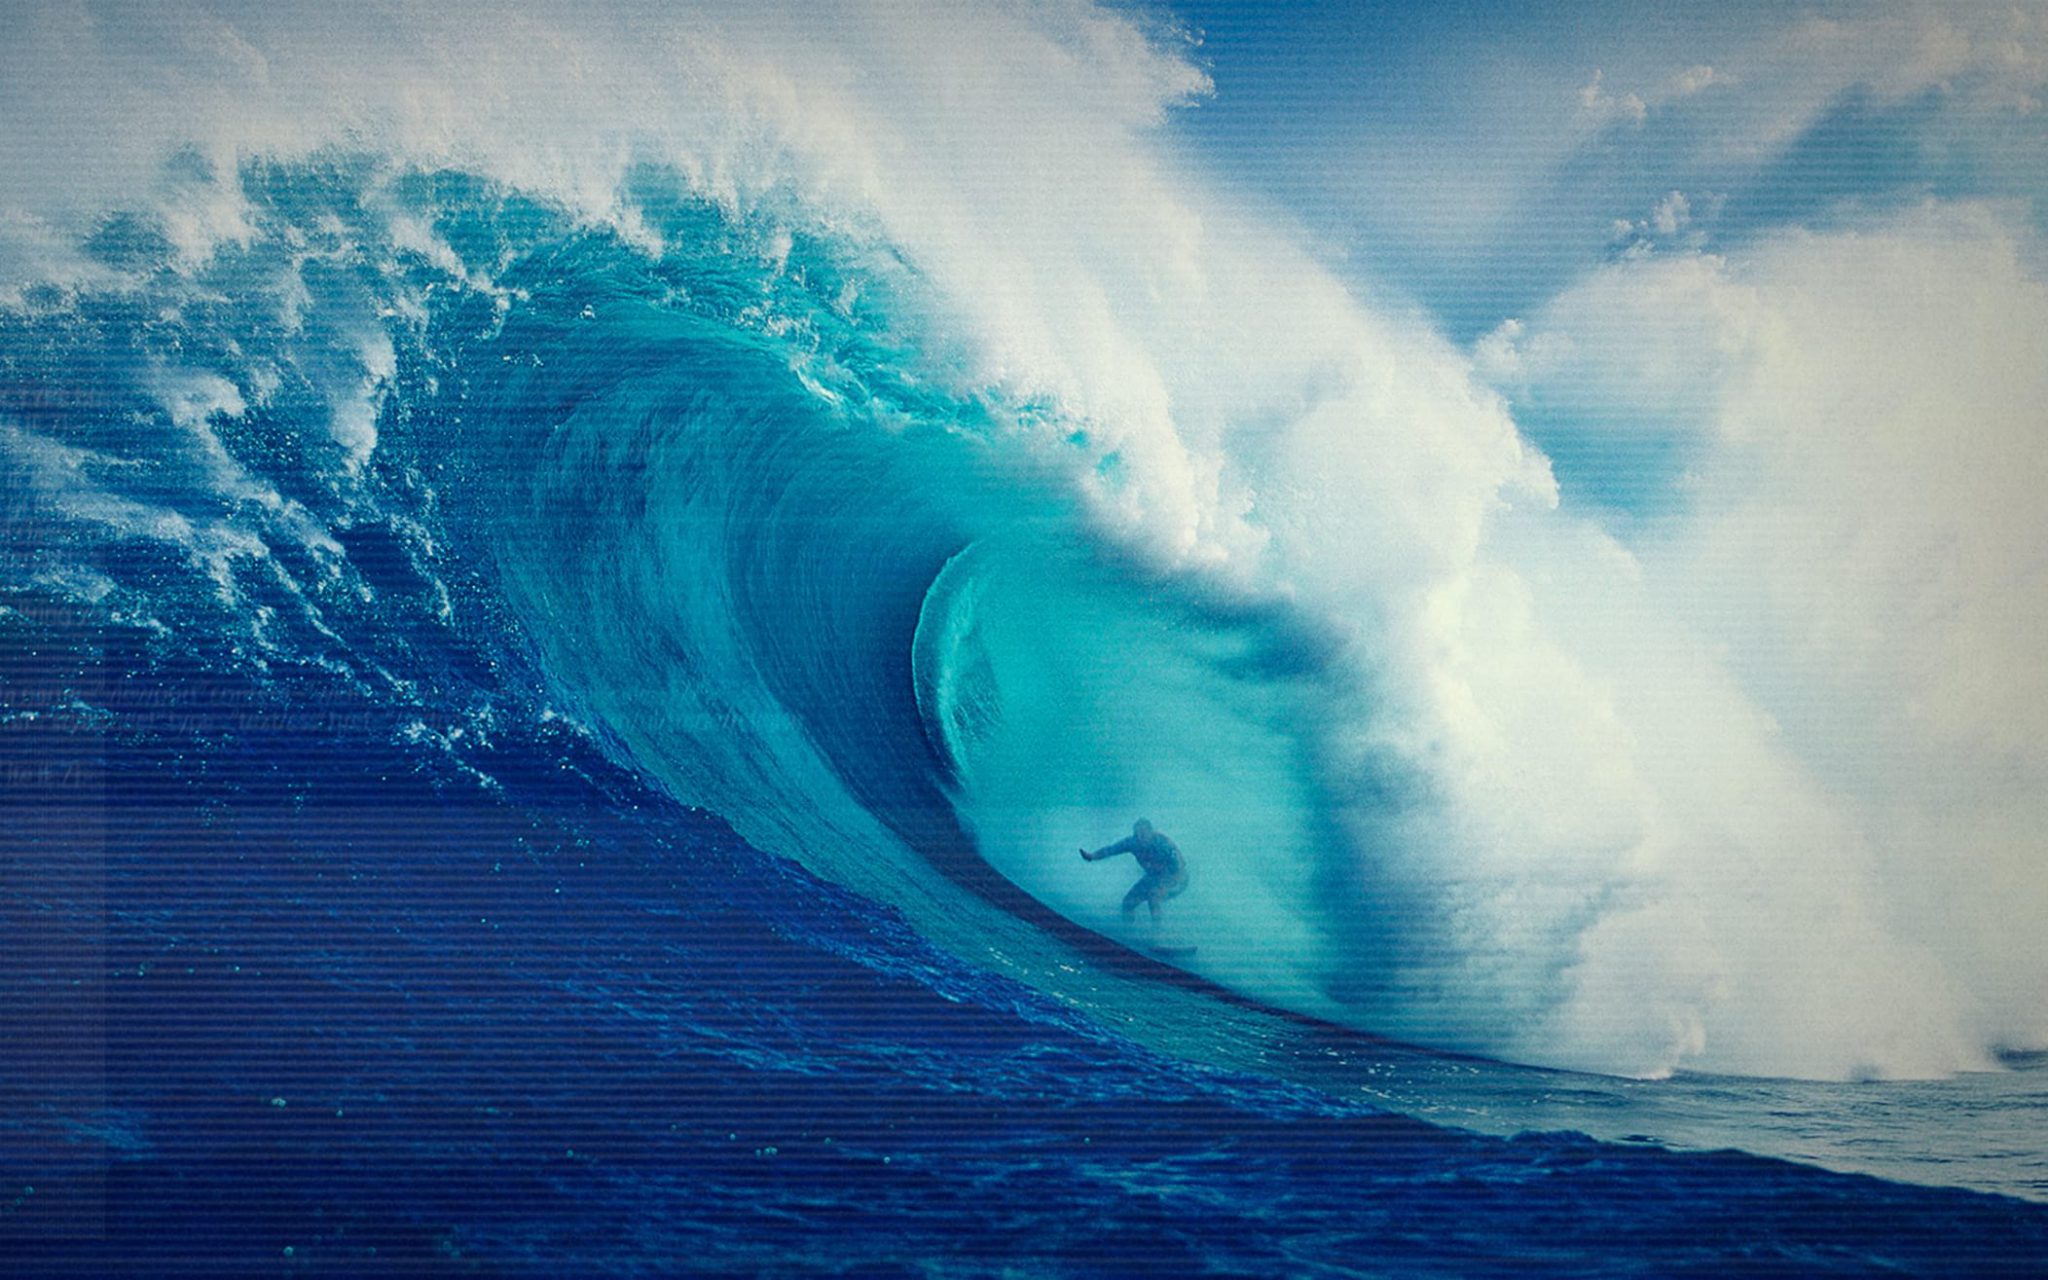 En surfare rider på en stor våg ute i det blå havet